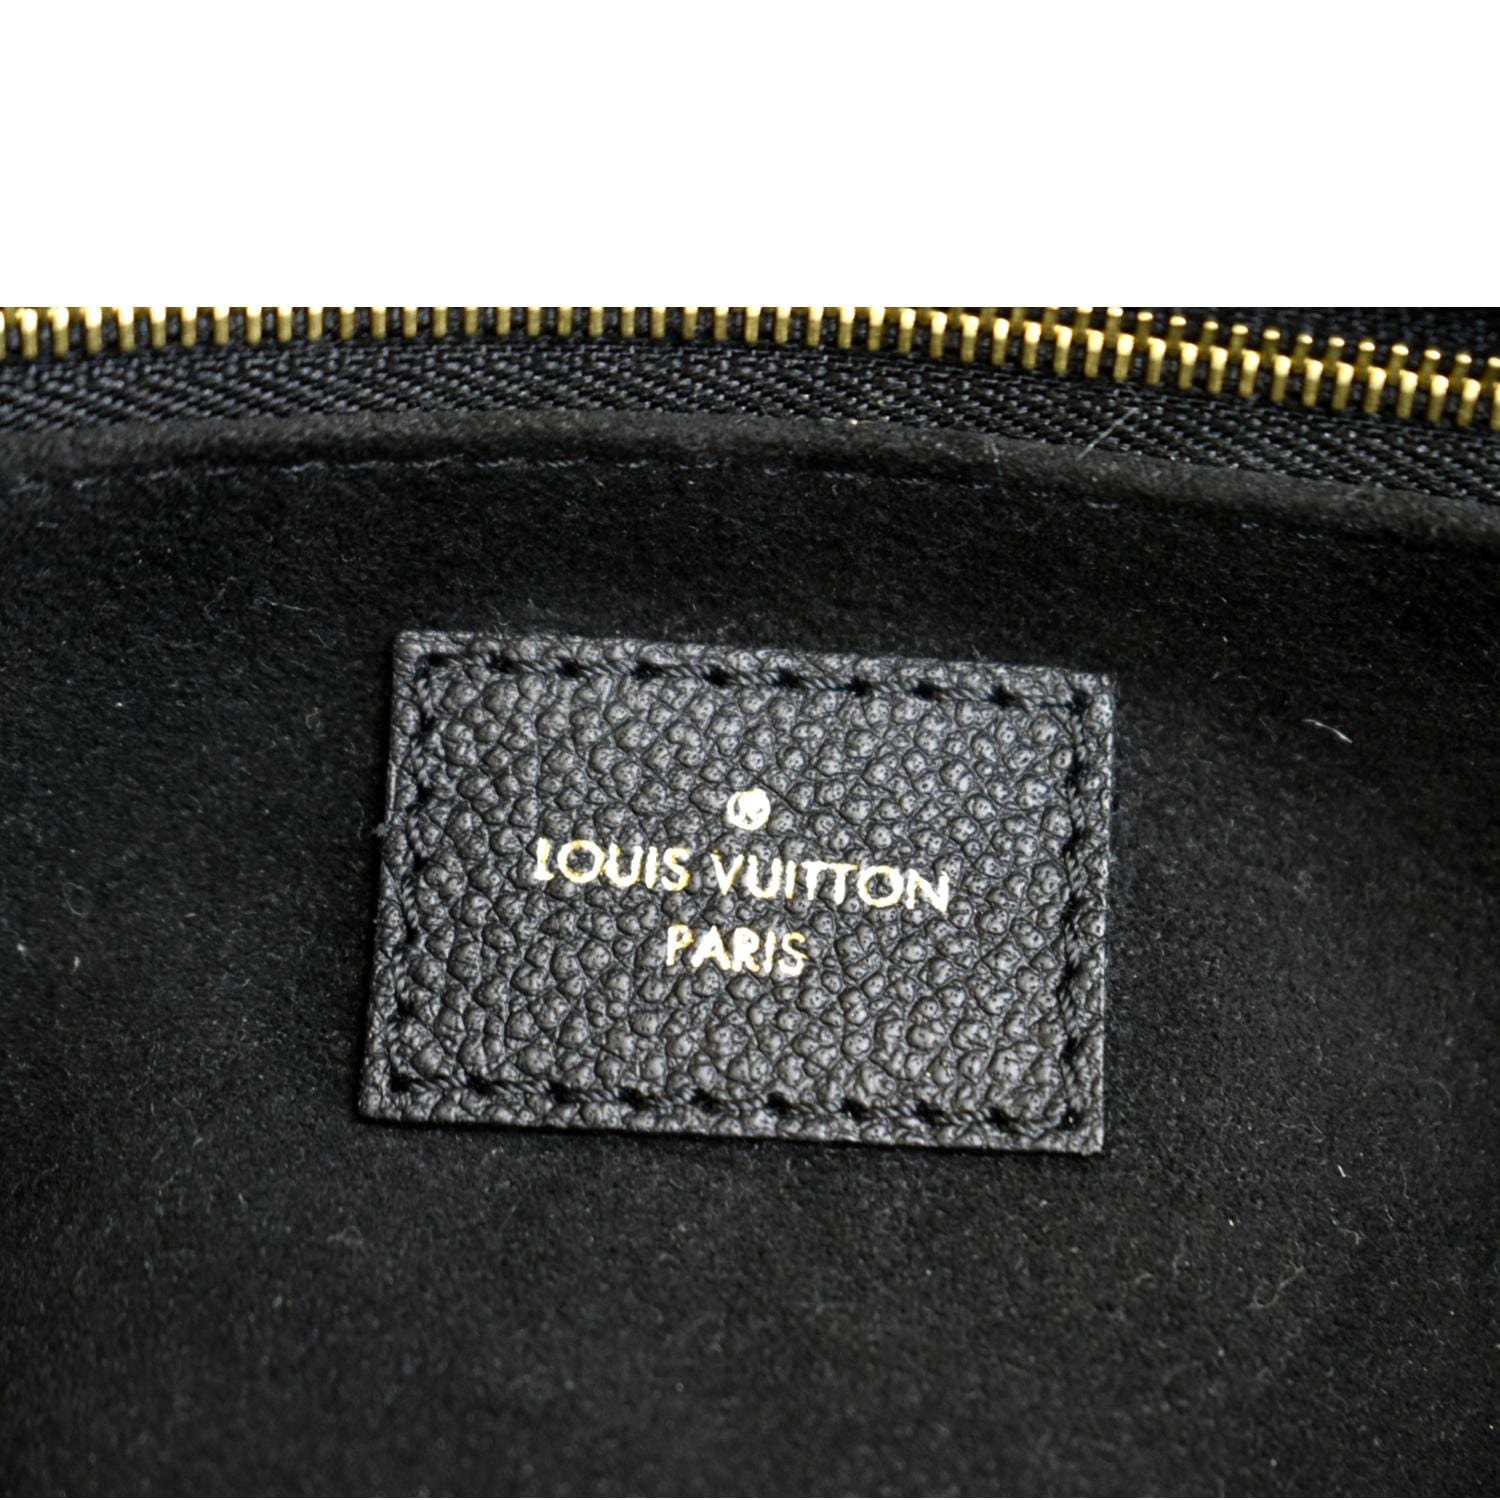 Saint Germain MM Shoulder bag in Monogram Empreinte leather, Gold Hard